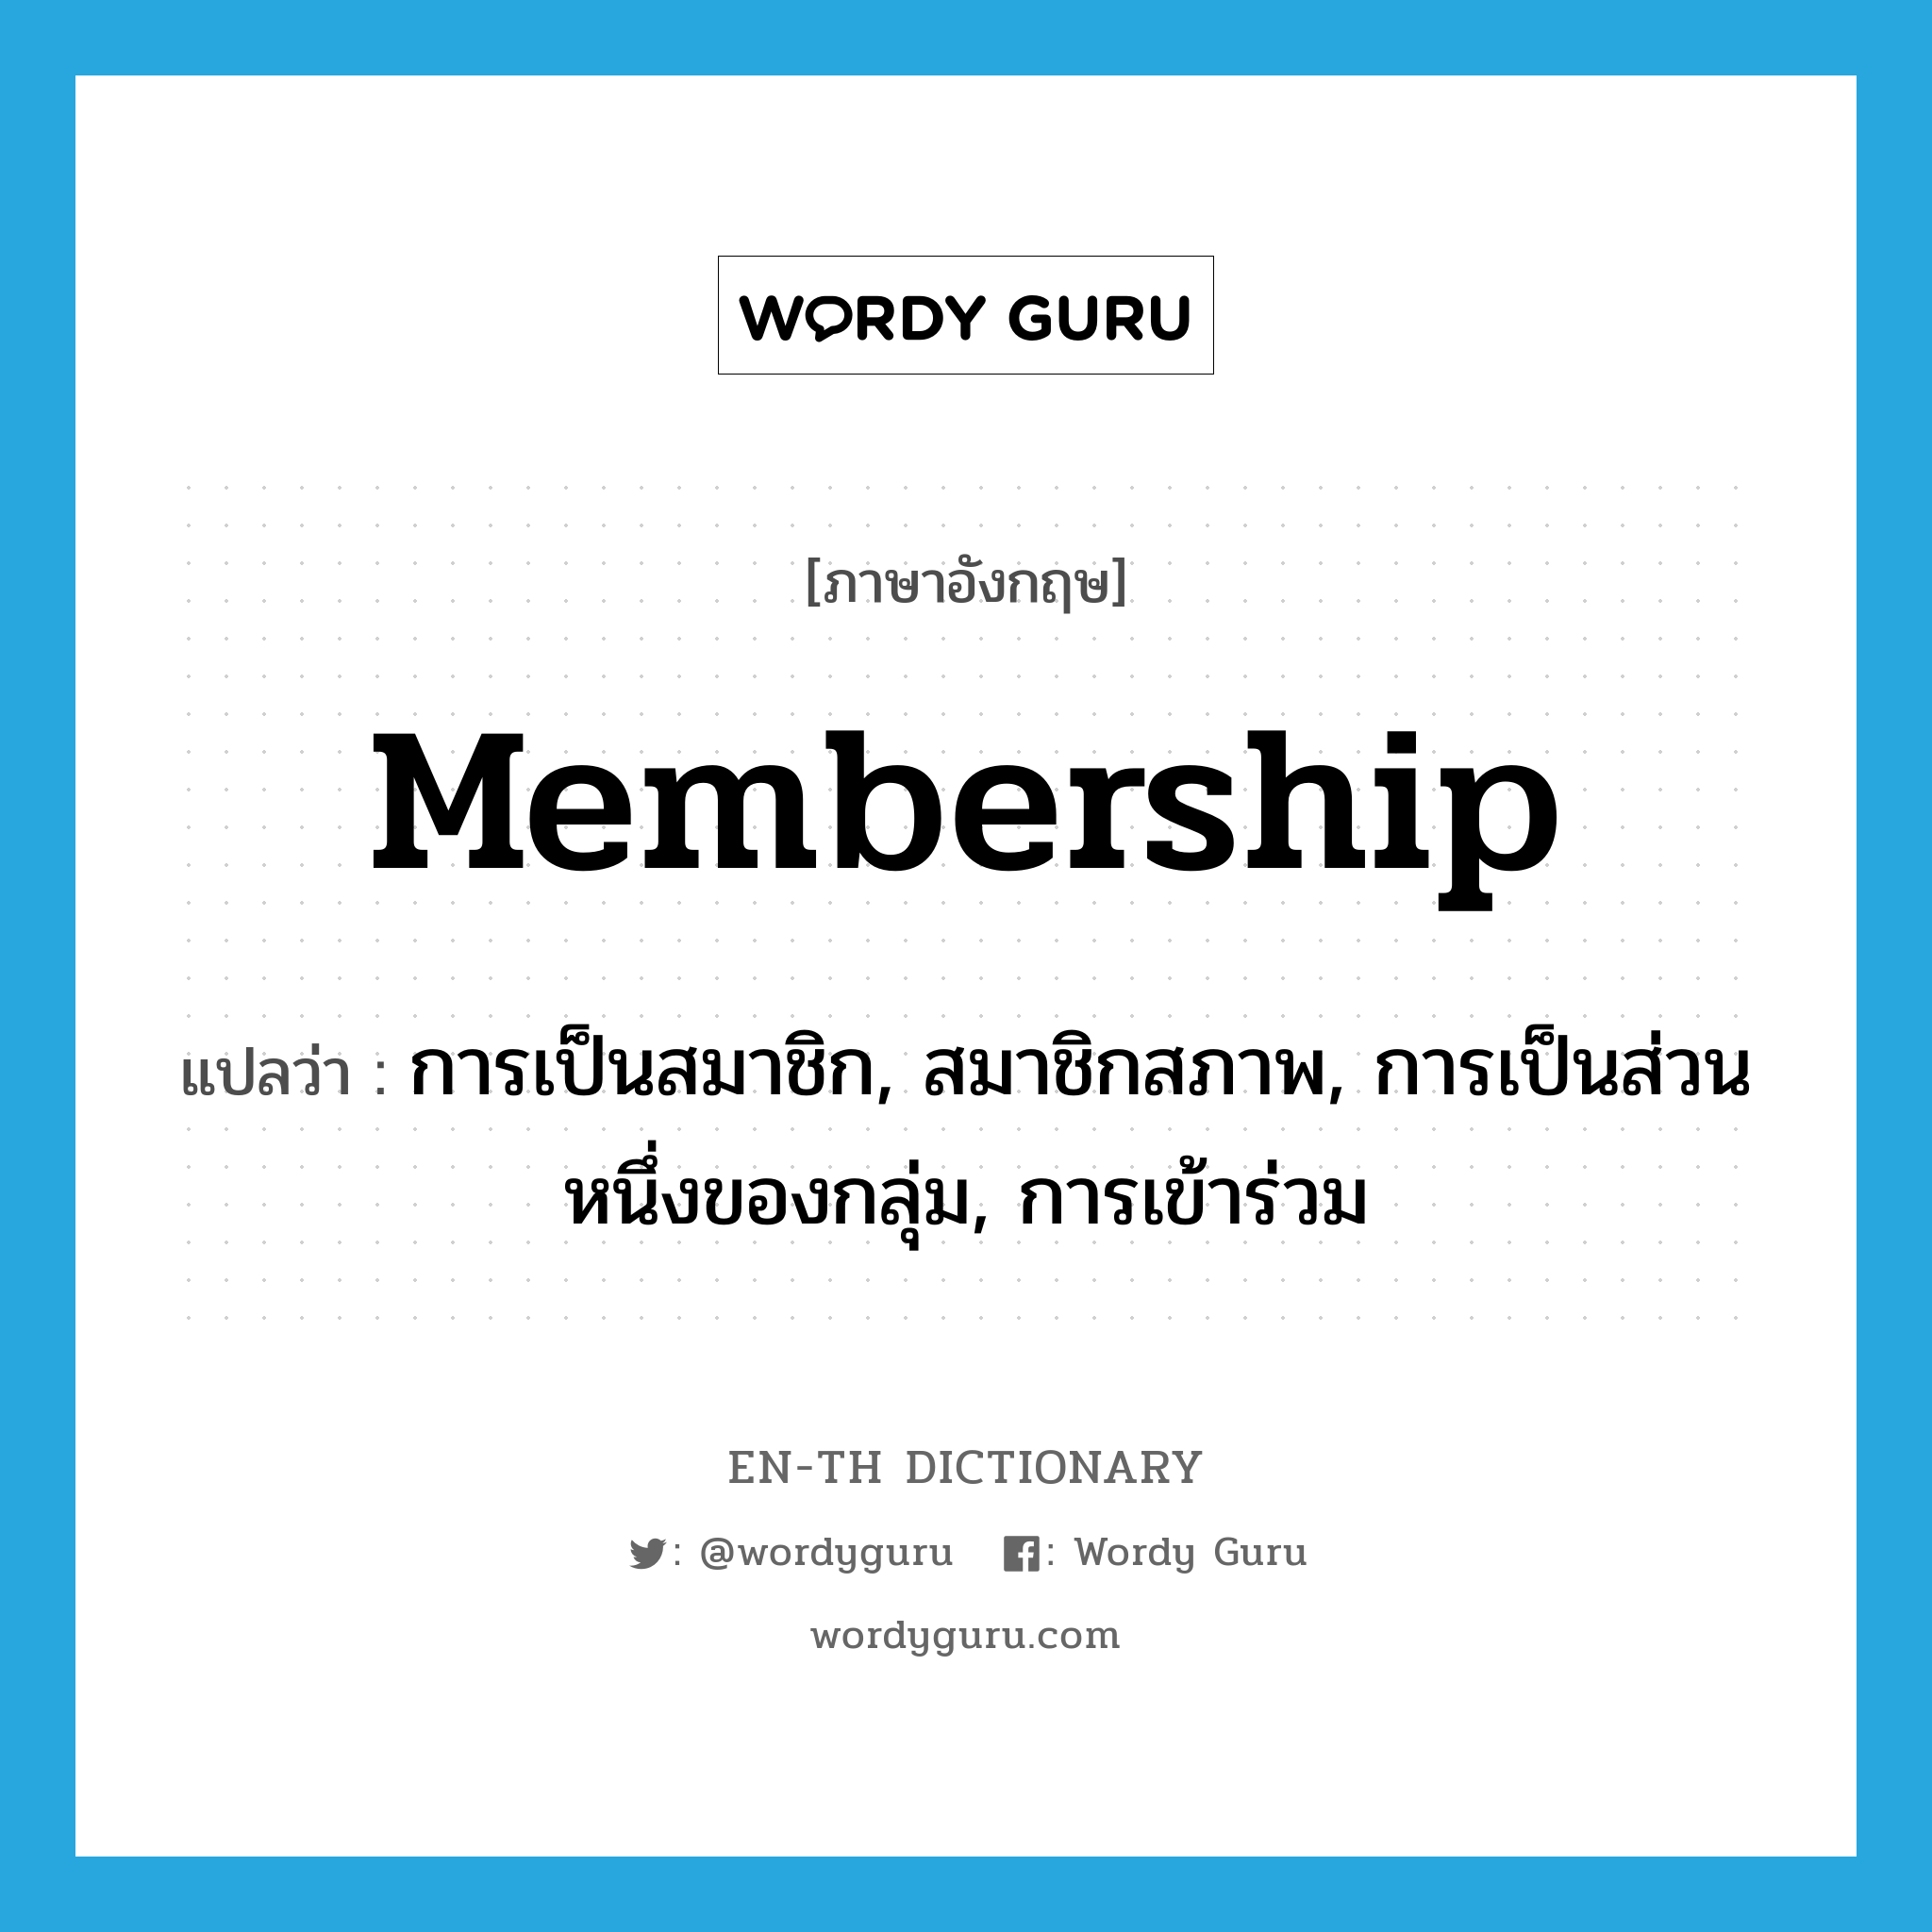 การเป็นสมาชิก, สมาชิกสภาพ, การเป็นส่วนหนึ่งของกลุ่ม, การเข้าร่วม ภาษาอังกฤษ?, คำศัพท์ภาษาอังกฤษ การเป็นสมาชิก, สมาชิกสภาพ, การเป็นส่วนหนึ่งของกลุ่ม, การเข้าร่วม แปลว่า membership ประเภท N หมวด N